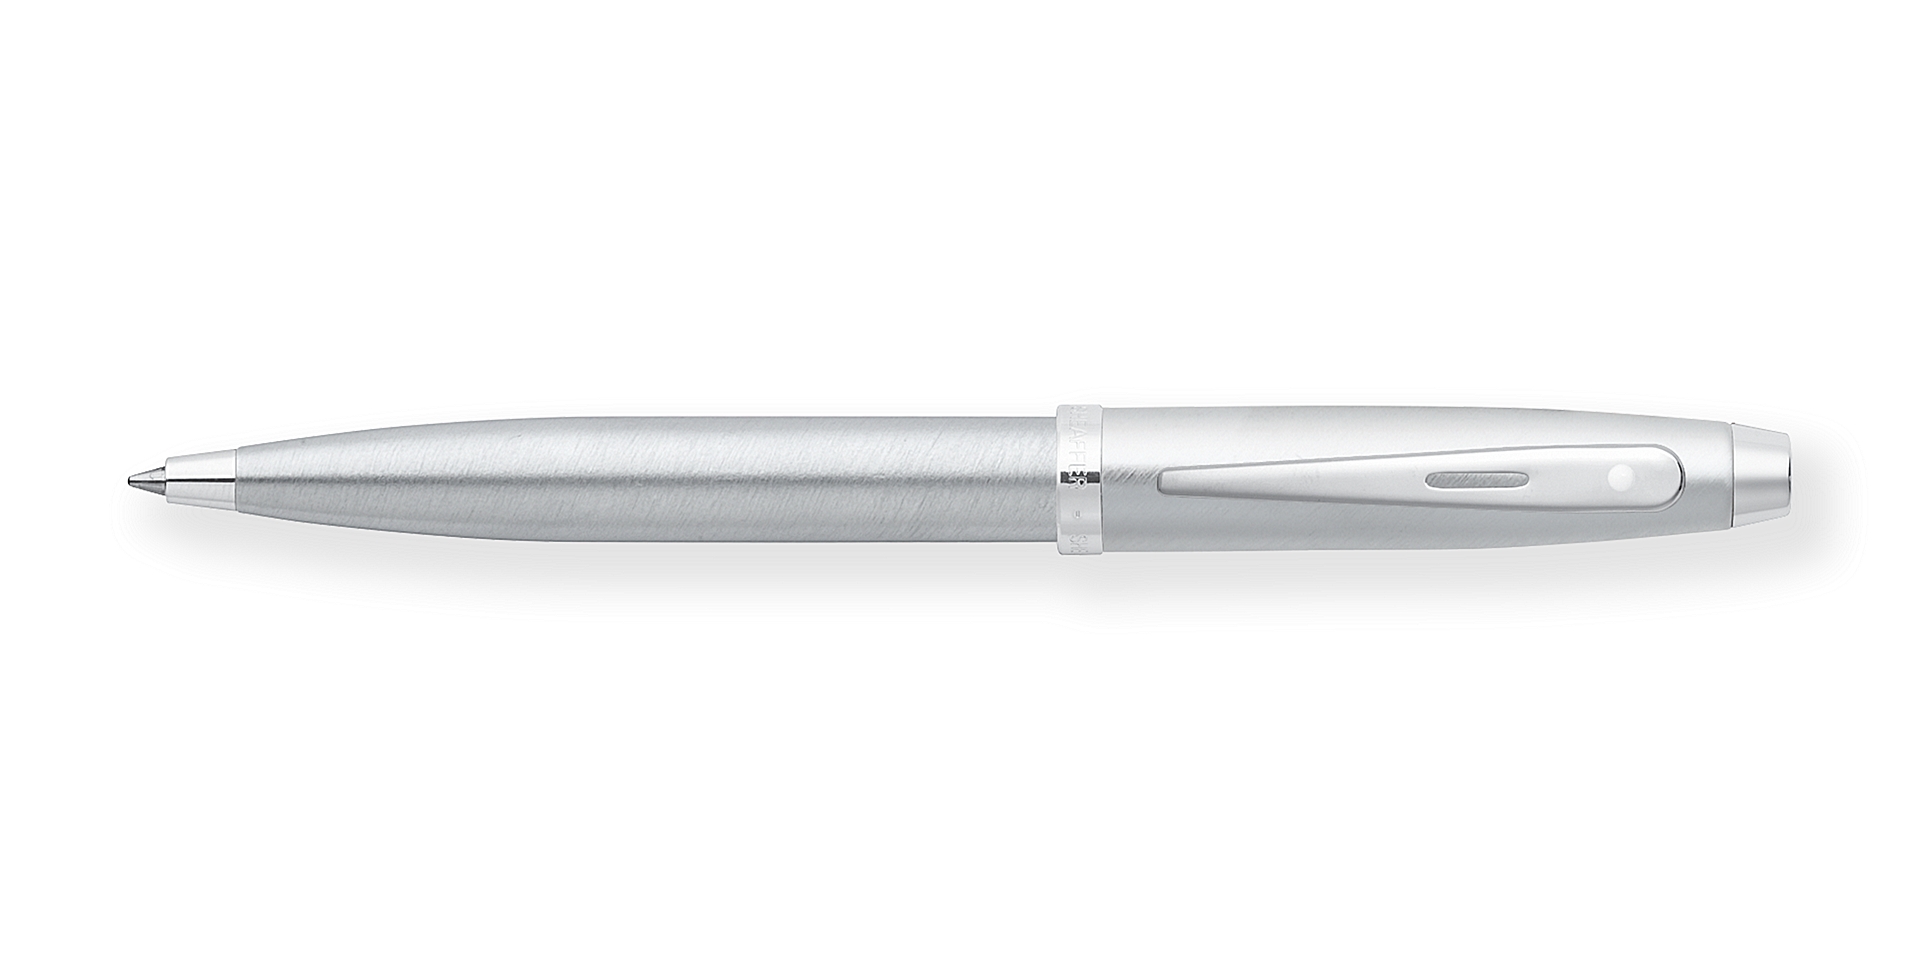  Sheaffer 100 Brushed Chrome Ballpoint Pen